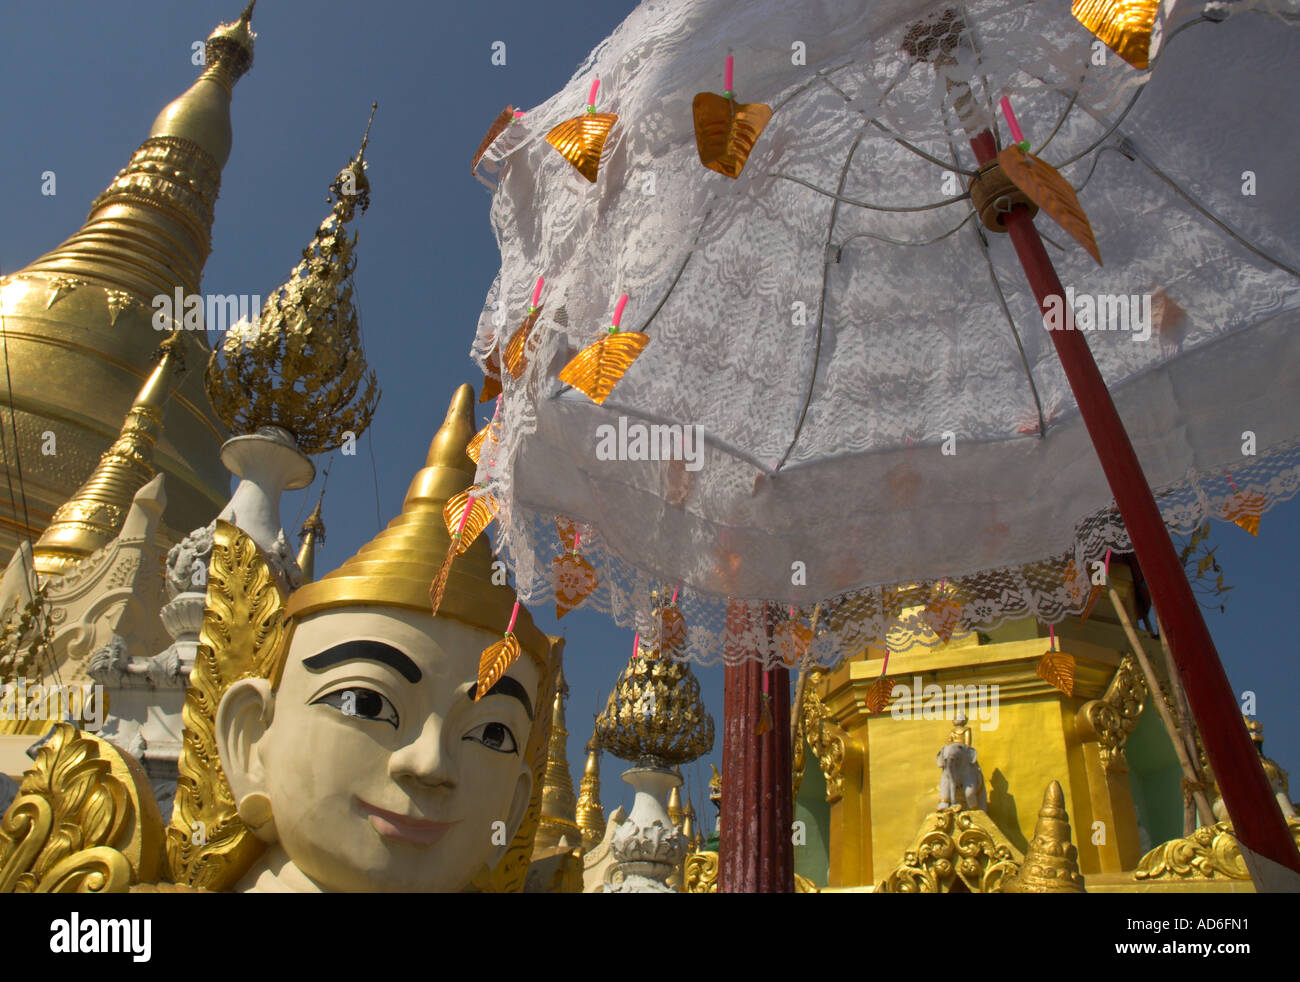 Myanmar Burma Yangon Shwedagon Paya mystical figure white umbrella and golden stupas Stock Photo